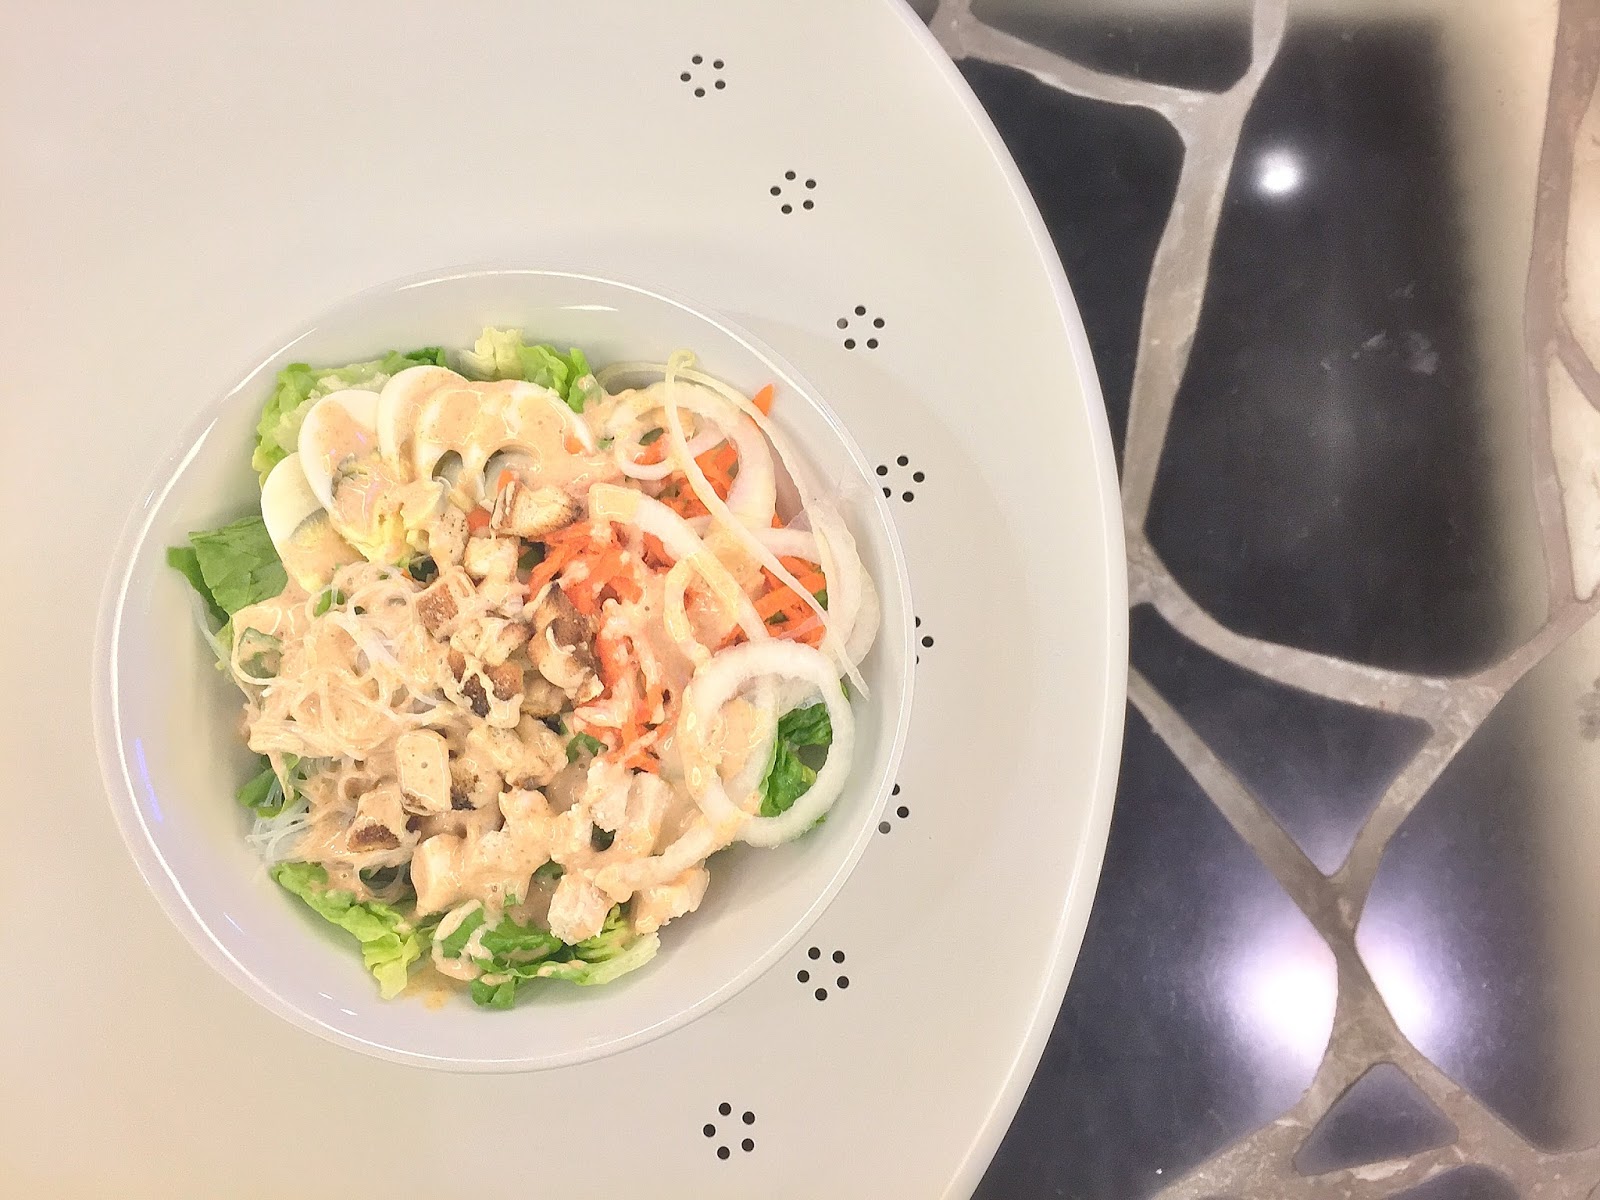 Green Rabbit Crepe & Salad Gastrobar - Mona Laksa